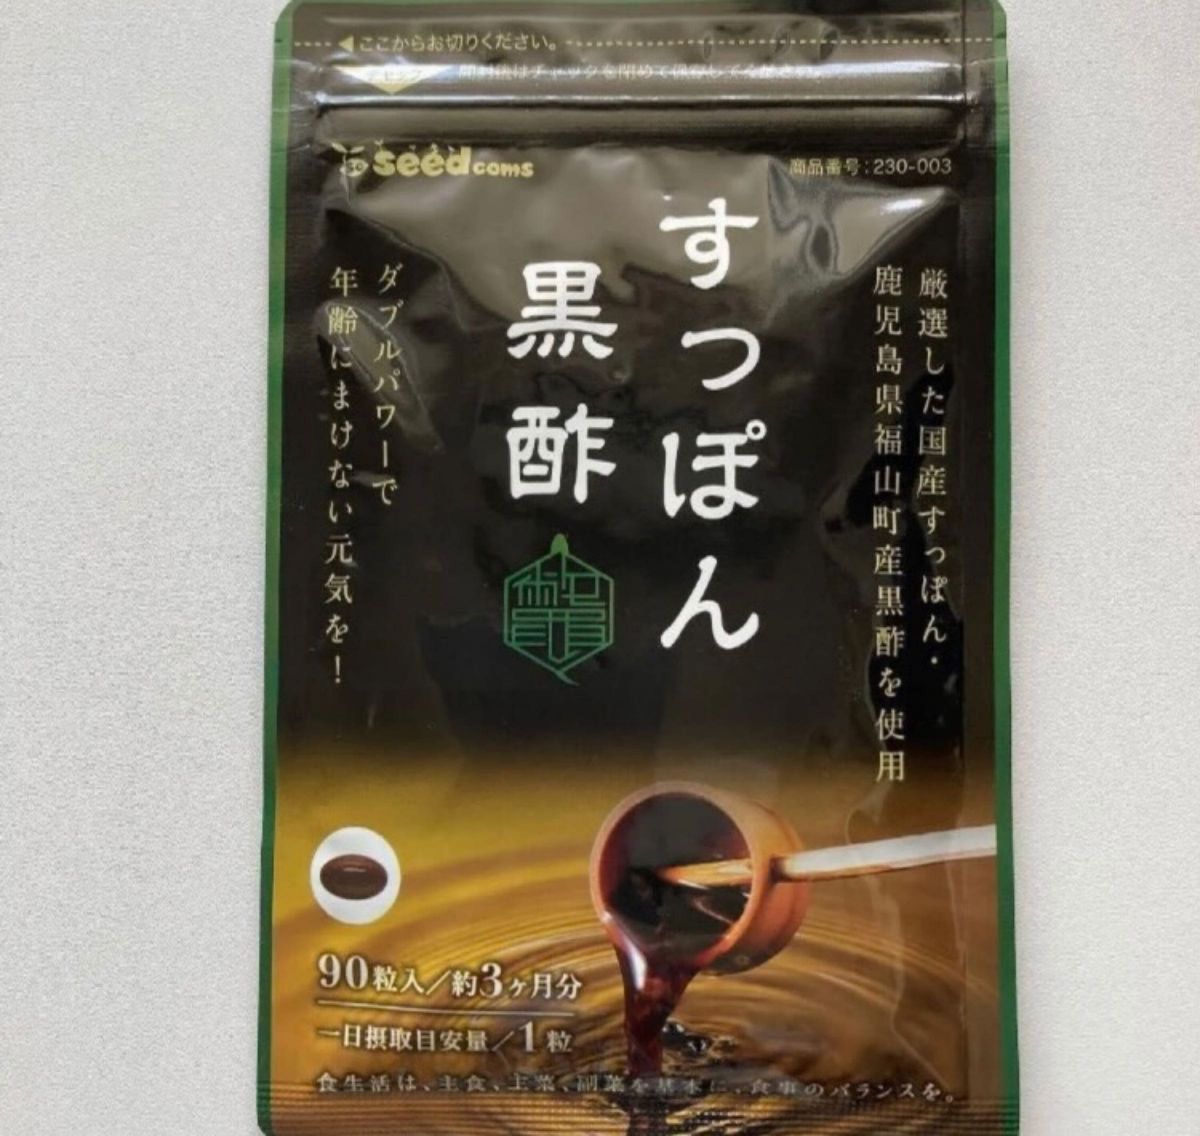 【3ヶ月分】国産すっぽん黒酢 シードコムス